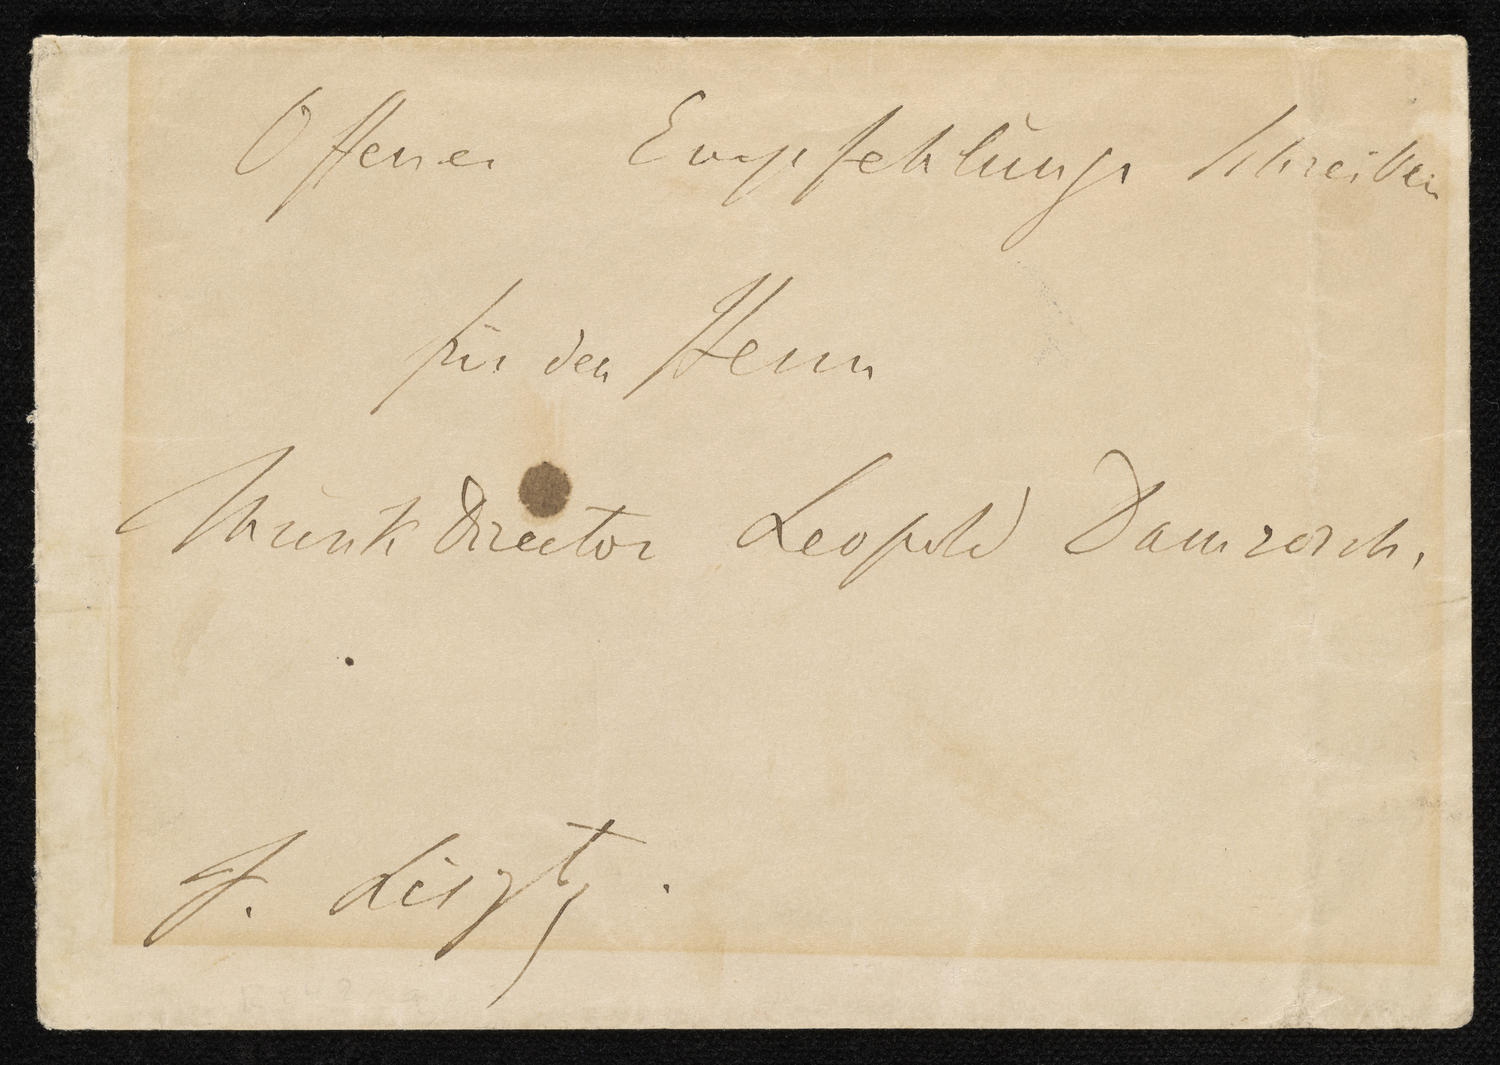 Envelope for Franz Liszt calling card, October 4, 1860